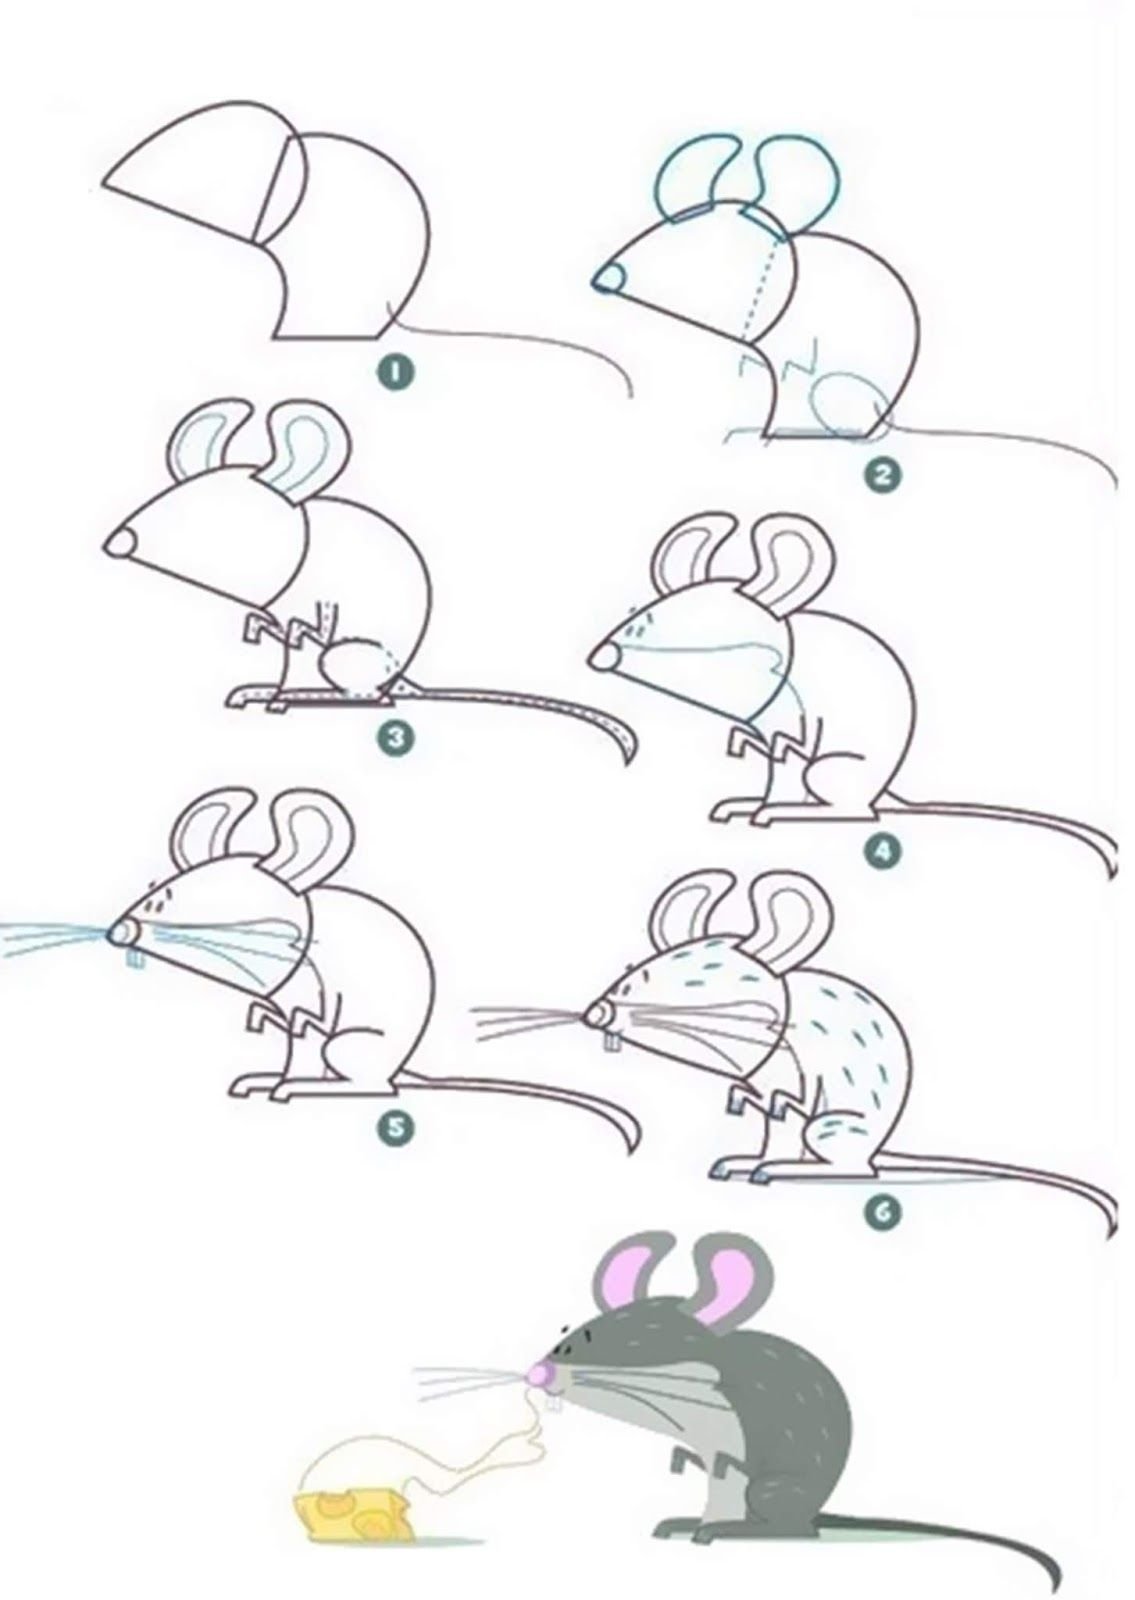 Нарисовать рисунок мышку легко